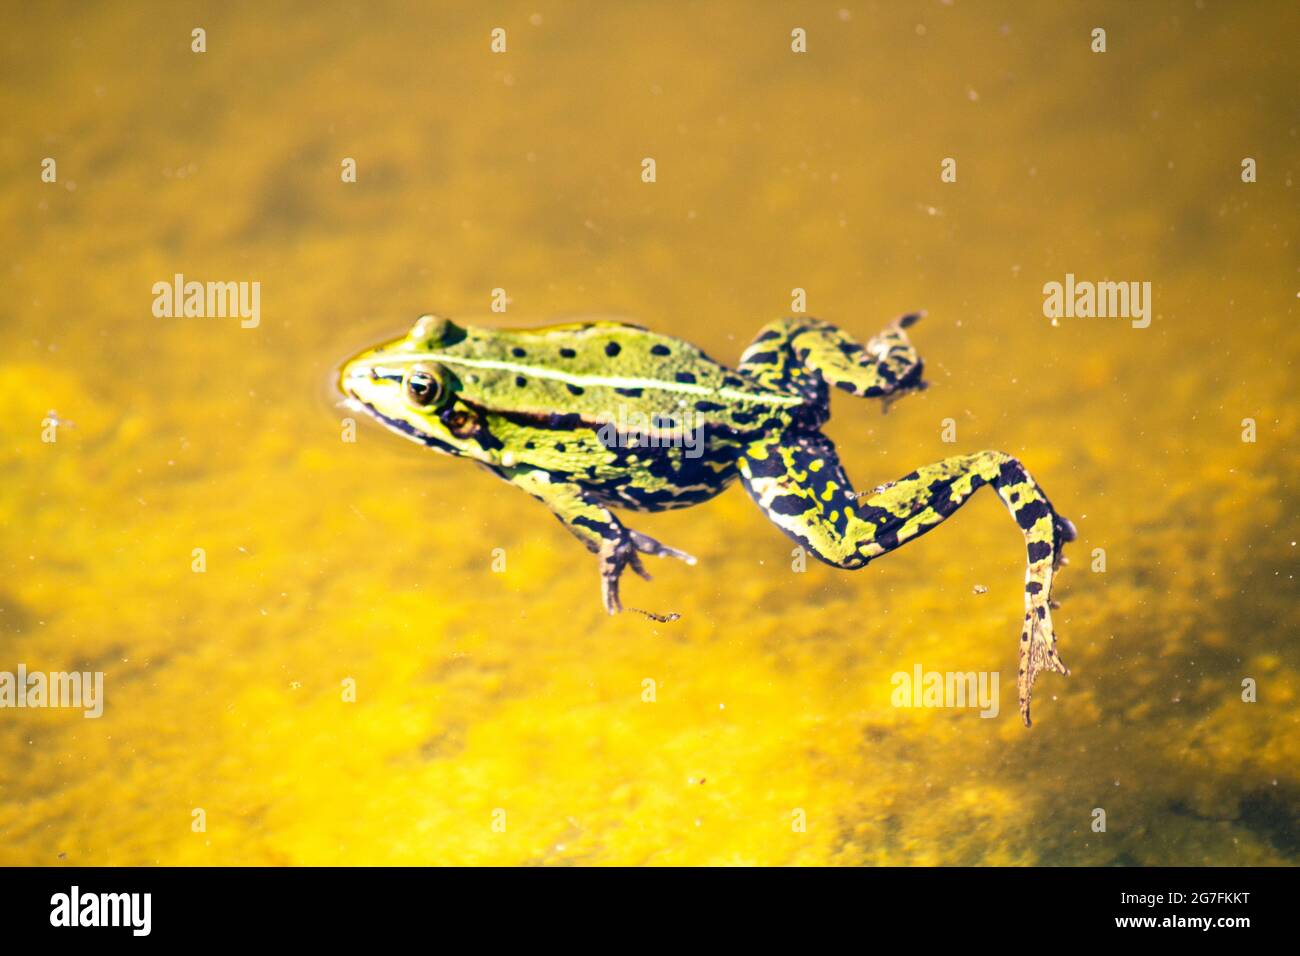 Frosch schwimmen in einem See Stockfotografie - Alamy